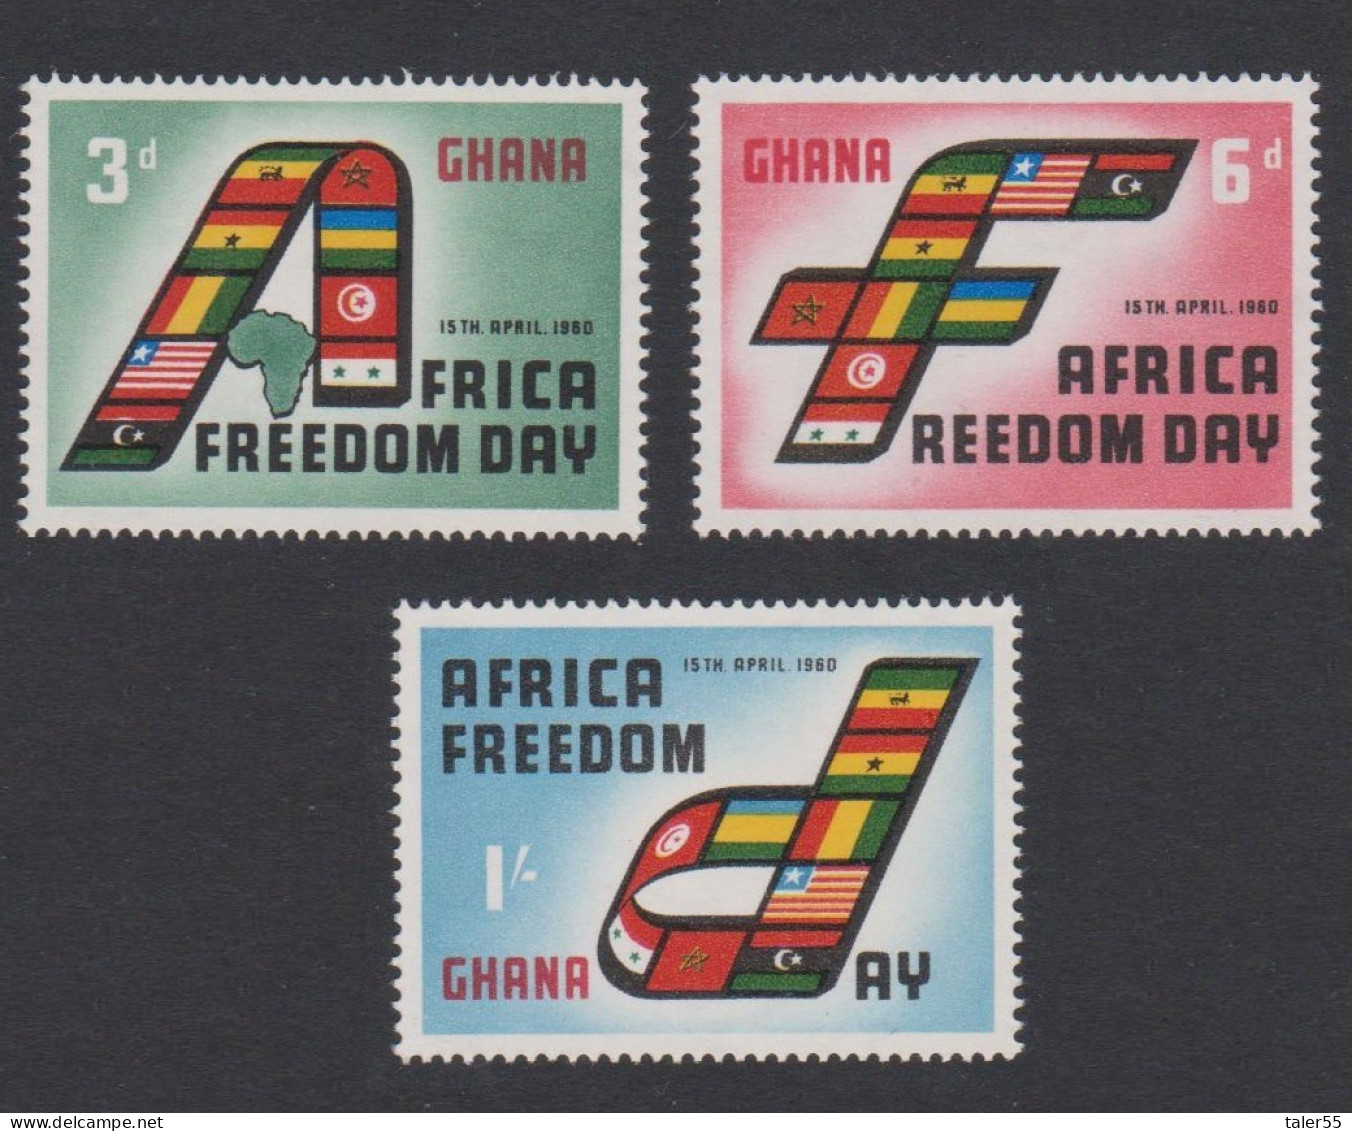 Ghana African Freedom Day 3v 1960 MNH SG#242-244 Sc#75-77 - Ghana (1957-...)